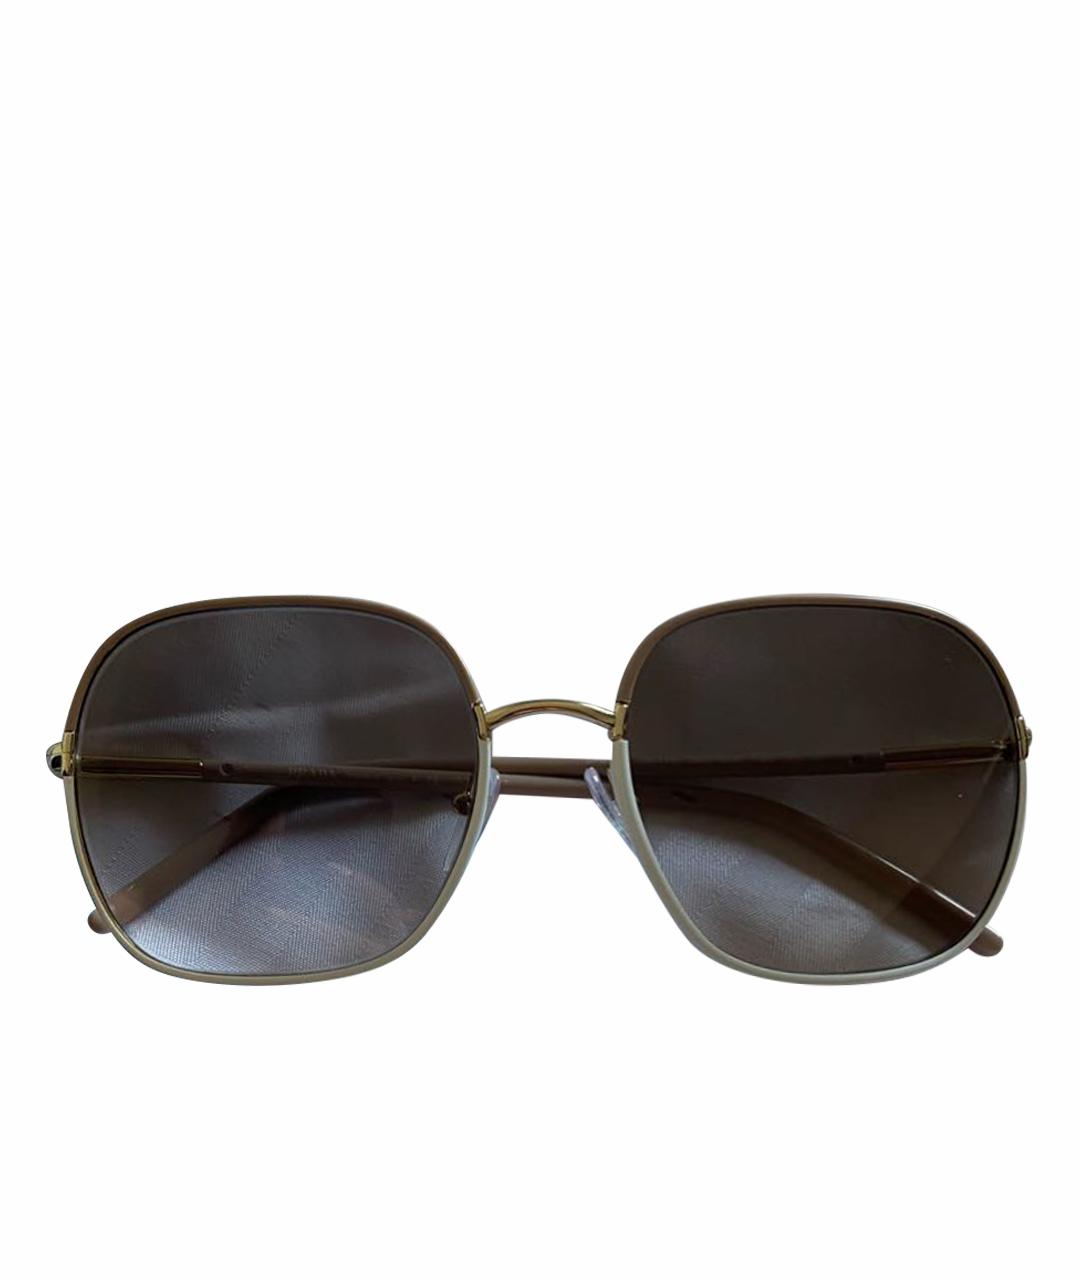 PRADA Бежевые пластиковые солнцезащитные очки, фото 1